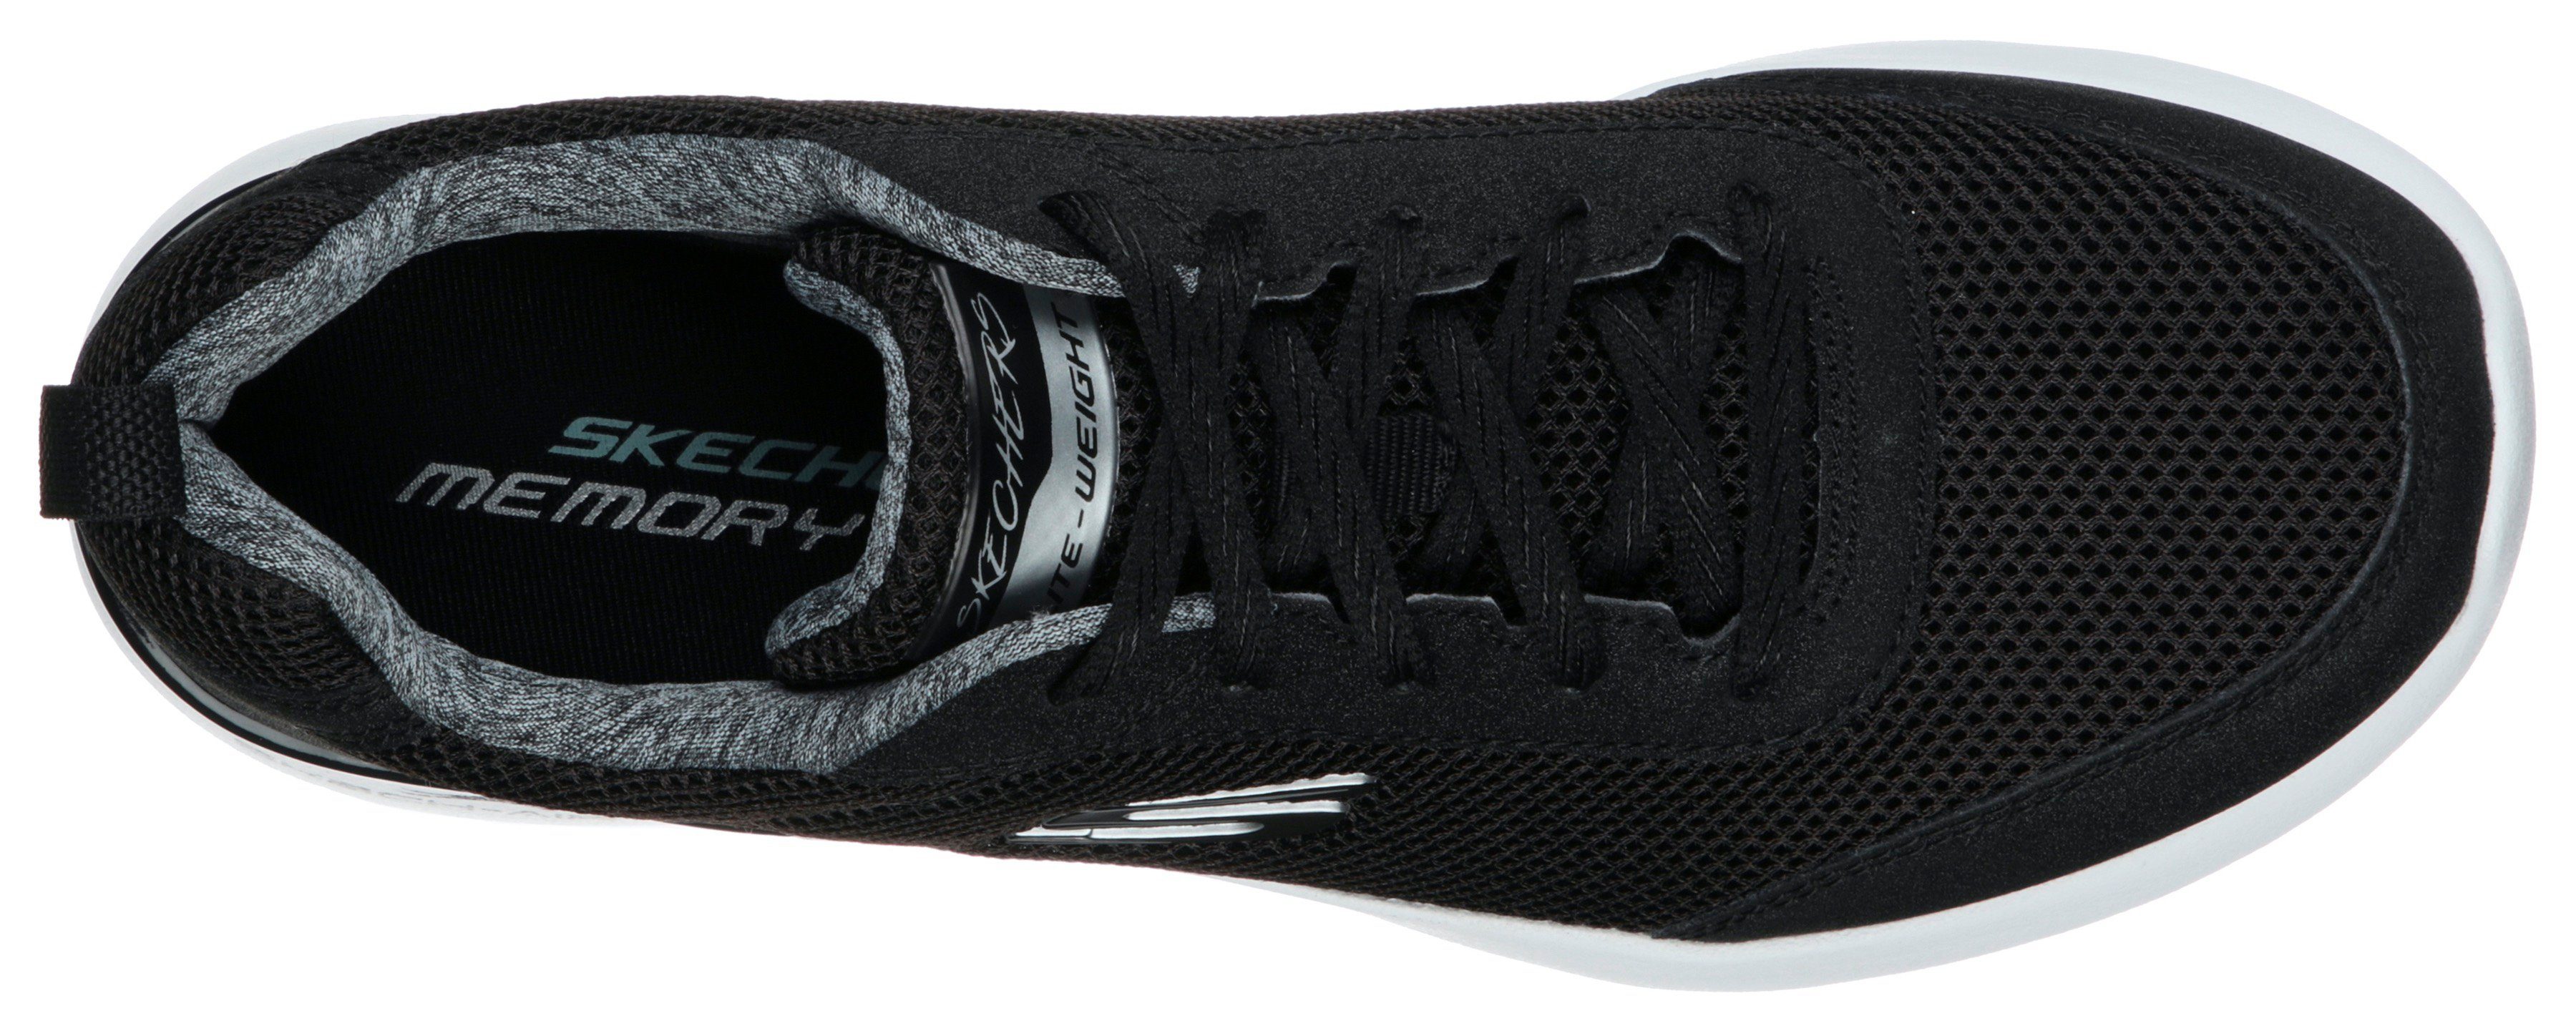 Sneaker an Dynamight Brake - Fast Skech-Air Metallic-Element der Skechers Ferse mit schwarz-weiß